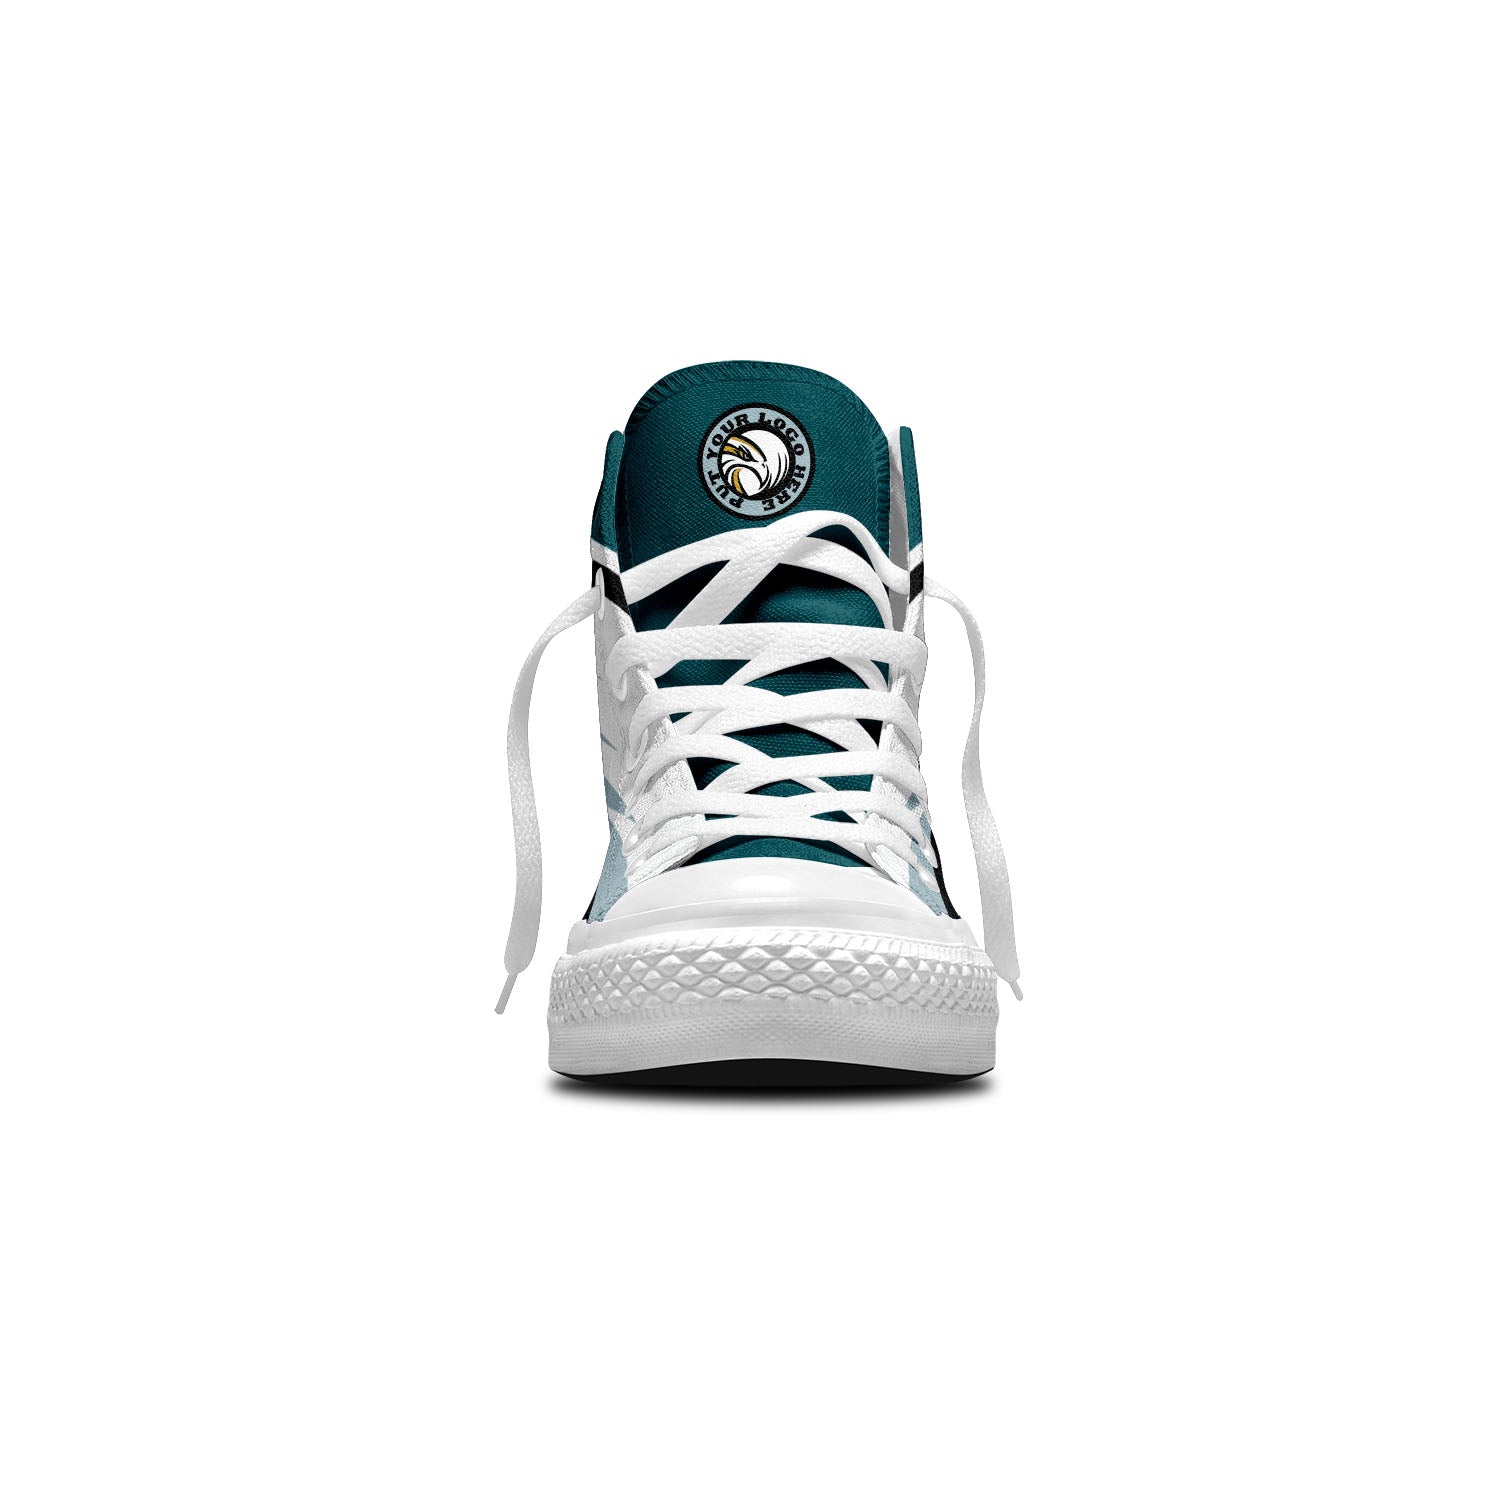 Benutzerdefinierte Hohe Spitze Fußball Segeltuch Schuhe Weiß-Grün